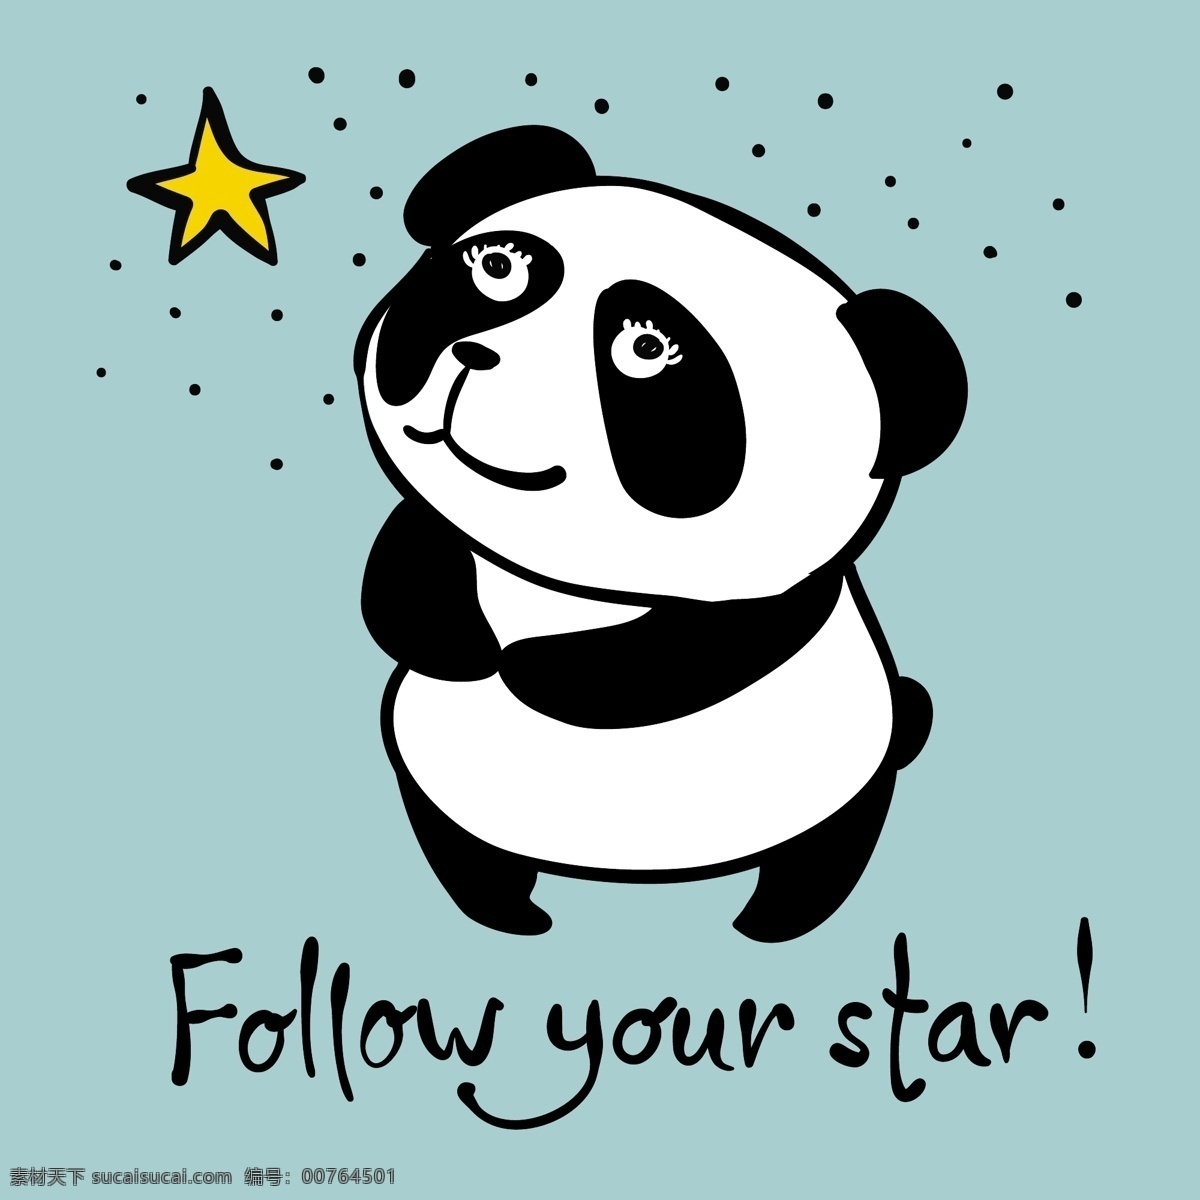 星星 小熊猫 卡通 动物 黑白 平面素材 设计素材 生活 矢量素材 温暖 熊猫 艺术